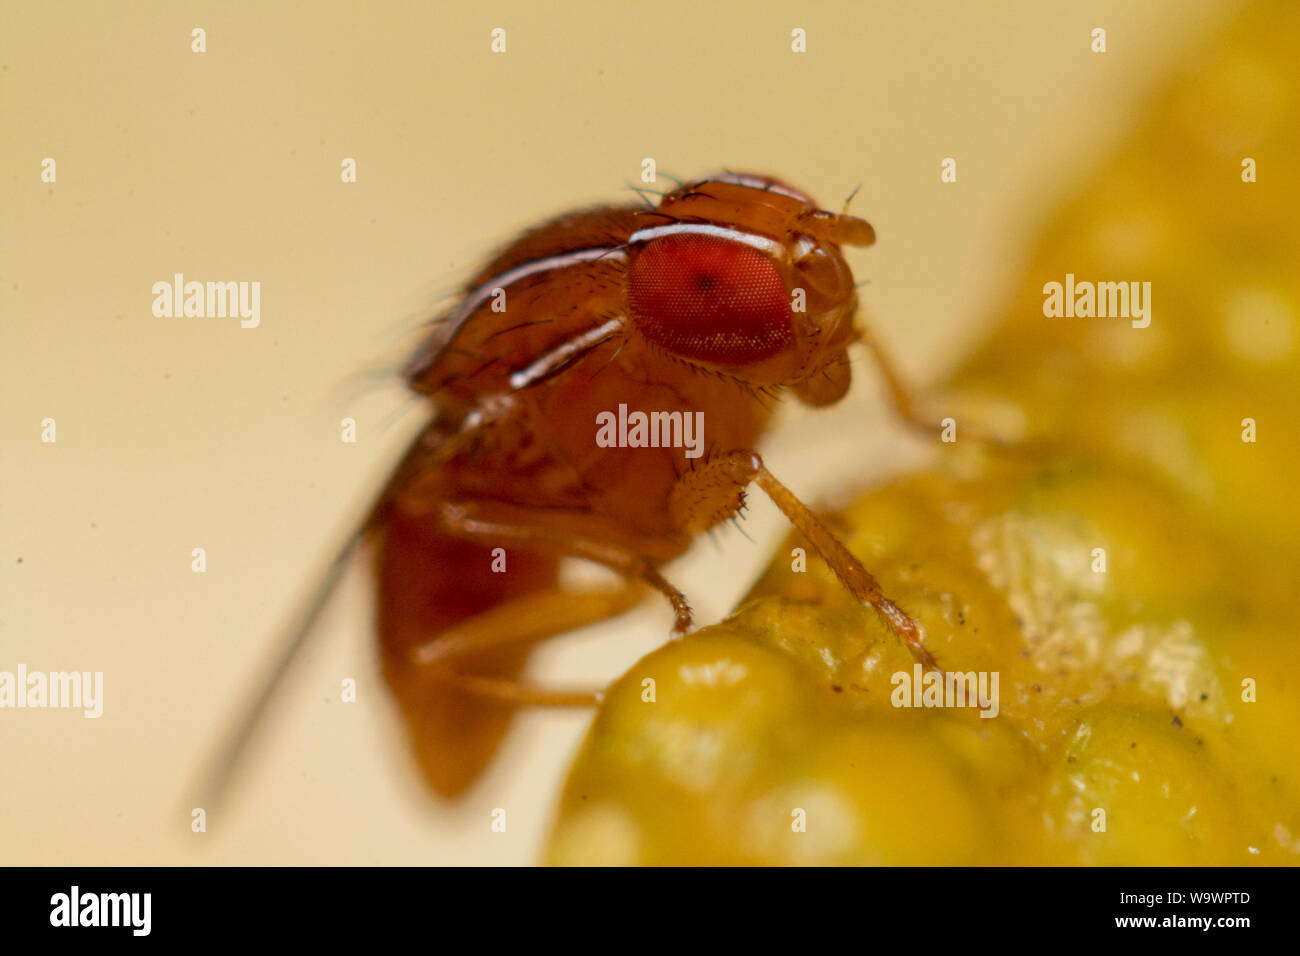 Close-up de la mouche des fruits (drosophila) sur un fruit montrant l'insecte en détails Banque D'Images